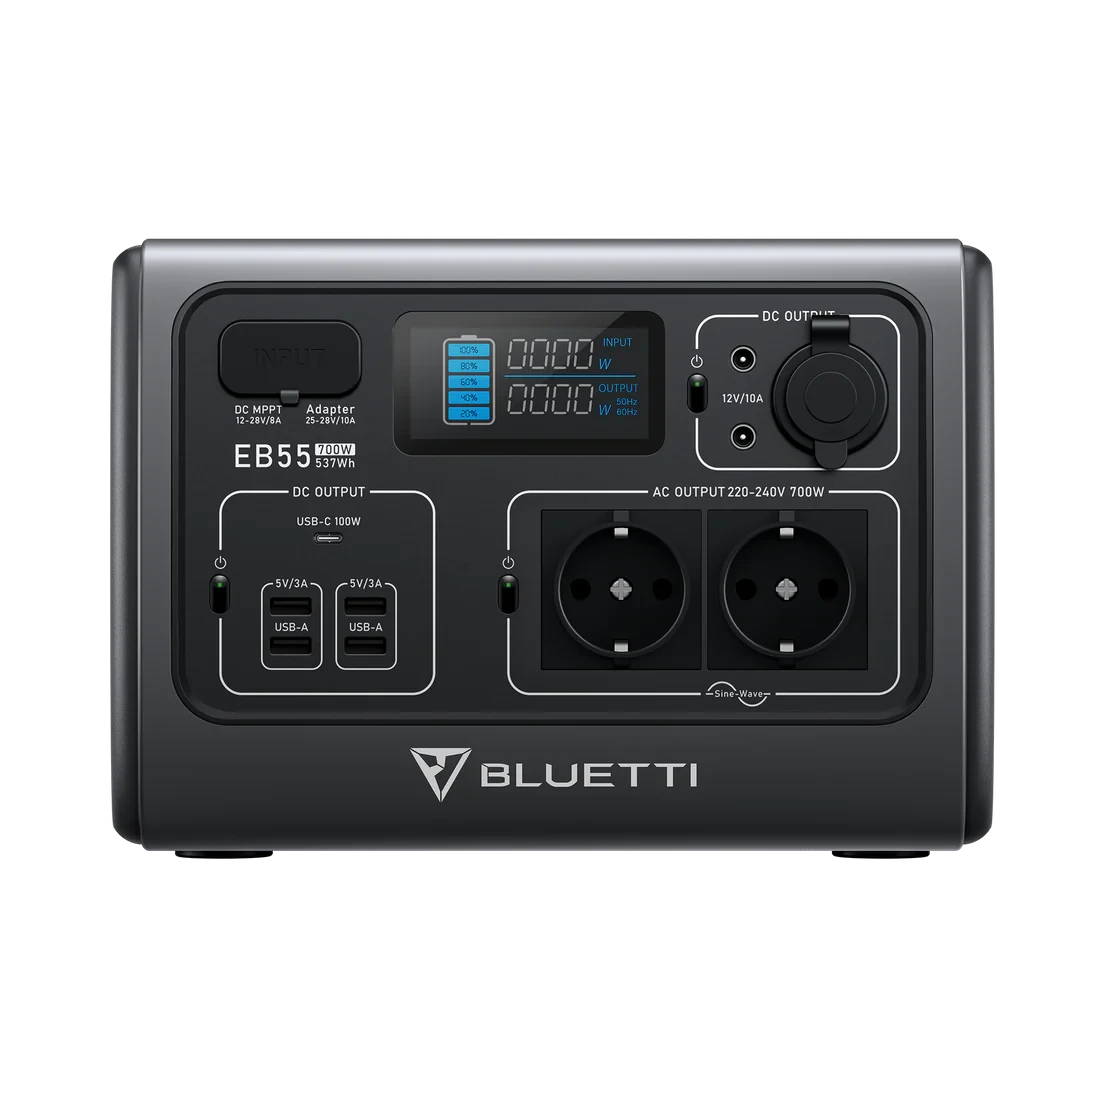 Зарядна станція Bluetti EB55 ( 700W / 537 WH)